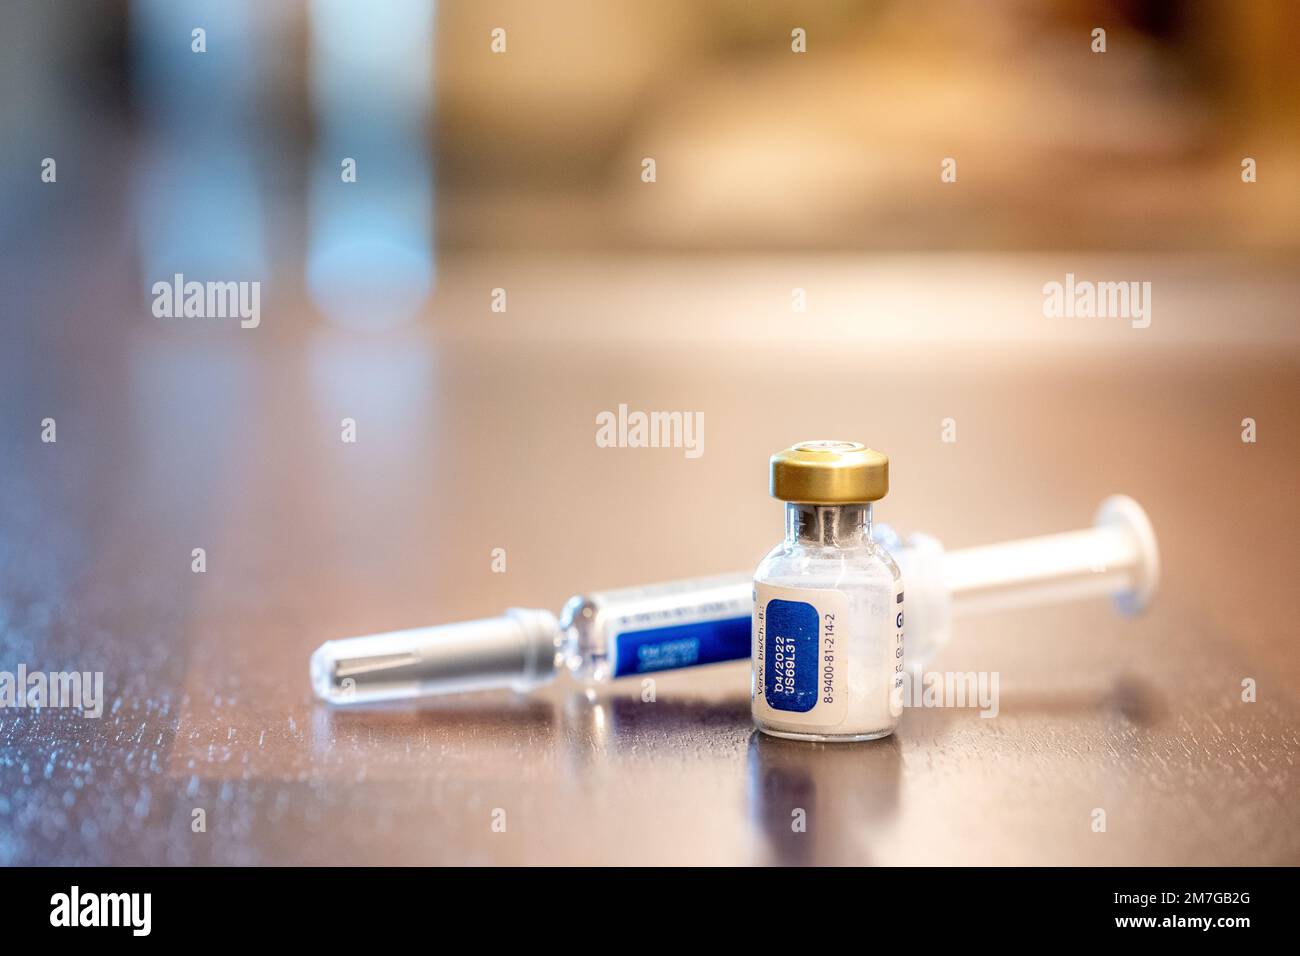 Insulin fläschchen -Fotos und -Bildmaterial in hoher Auflösung – Alamy